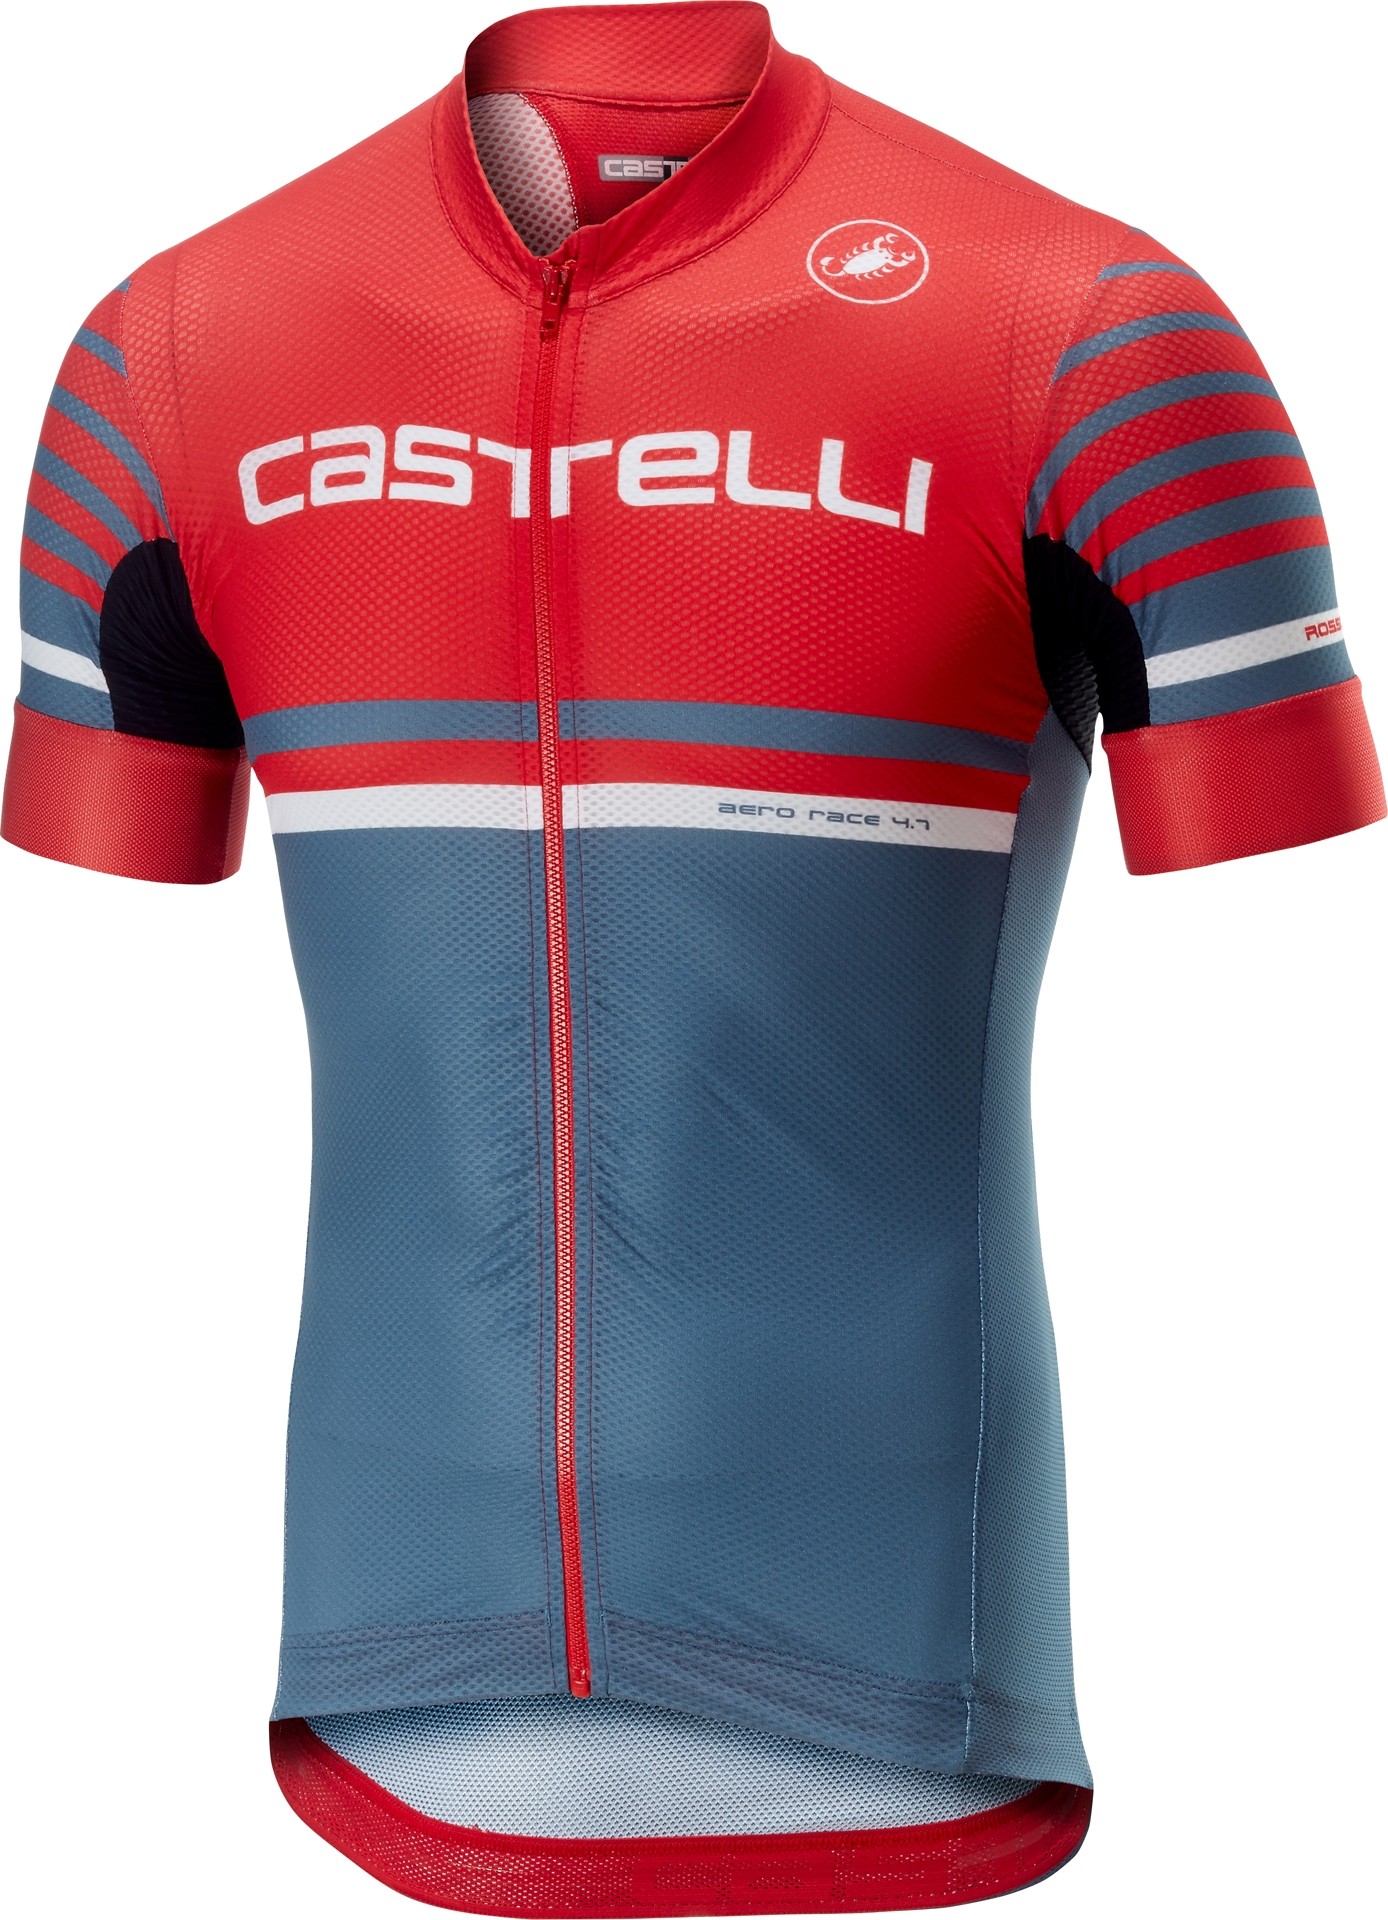 Castelli free ar 4.1 fietsshirt met korte mouwen rood licht steel blauw